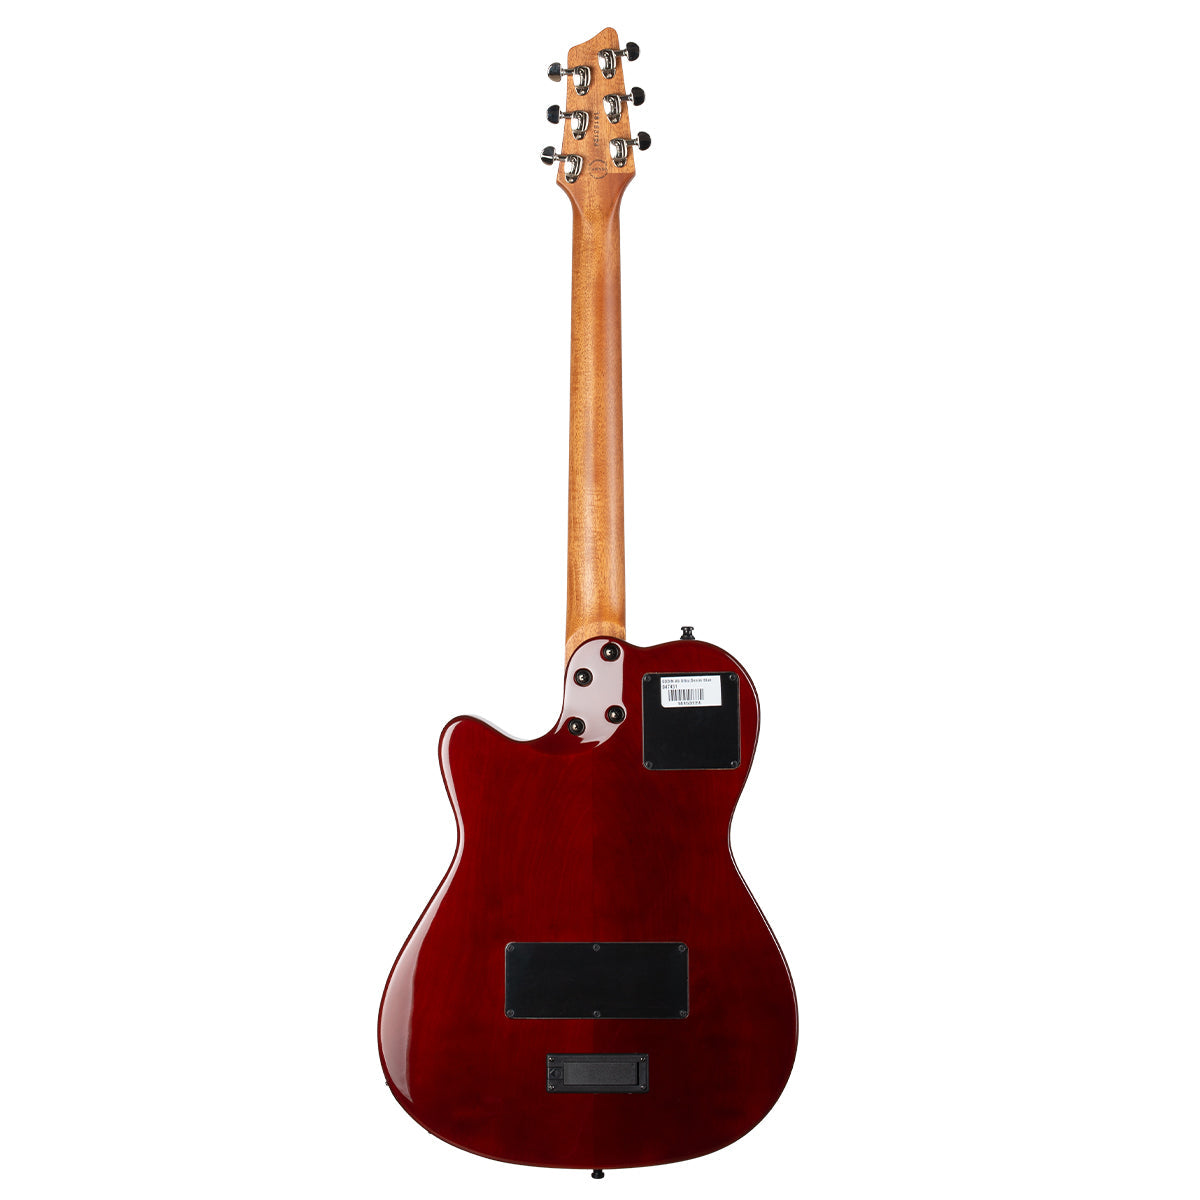 Godin A6 Ultra Electric Guitar ~ Denim Blue Flame, Electric Guitar for sale at Richards Guitars.